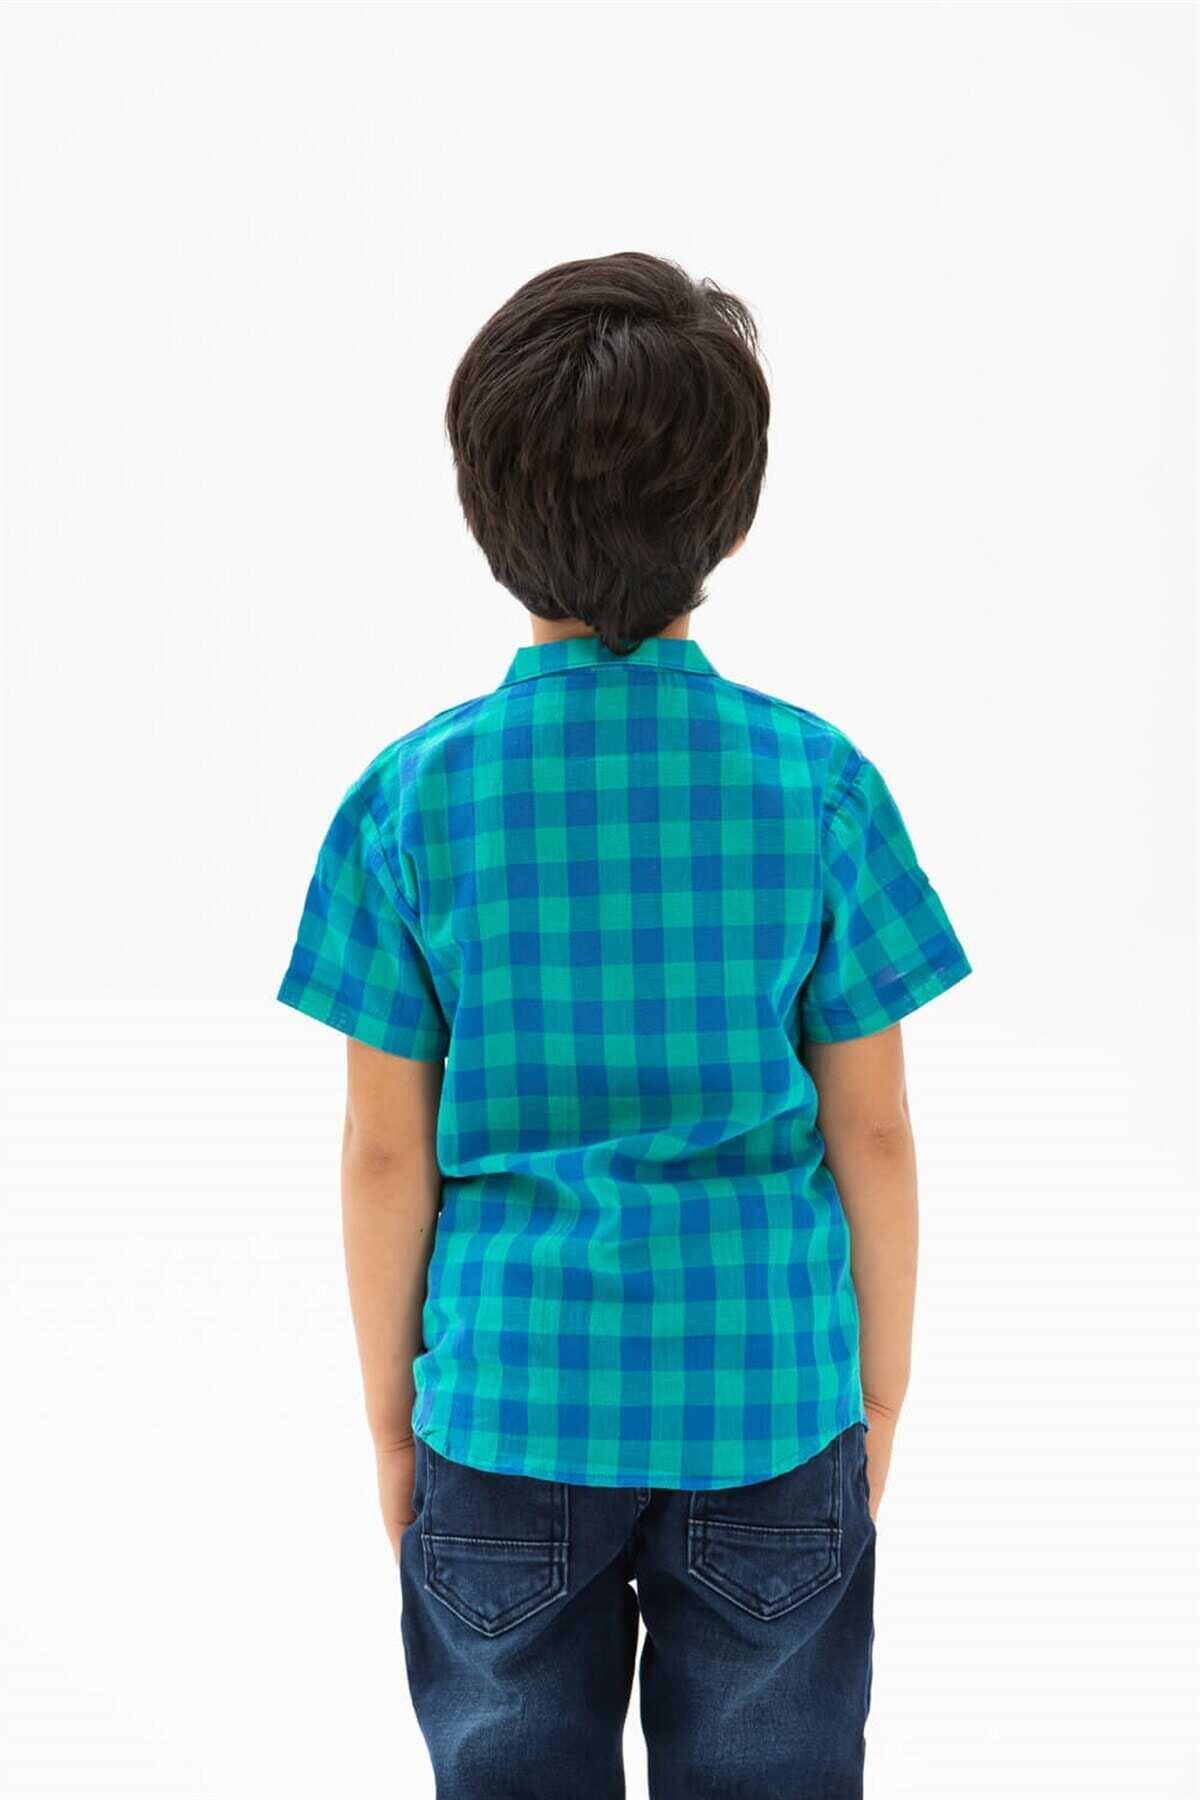 پیراهن بچه گانه پسرانه یقه ترکیبی آستین کوتاه سبز آبی برند Eliş Şile Bezi